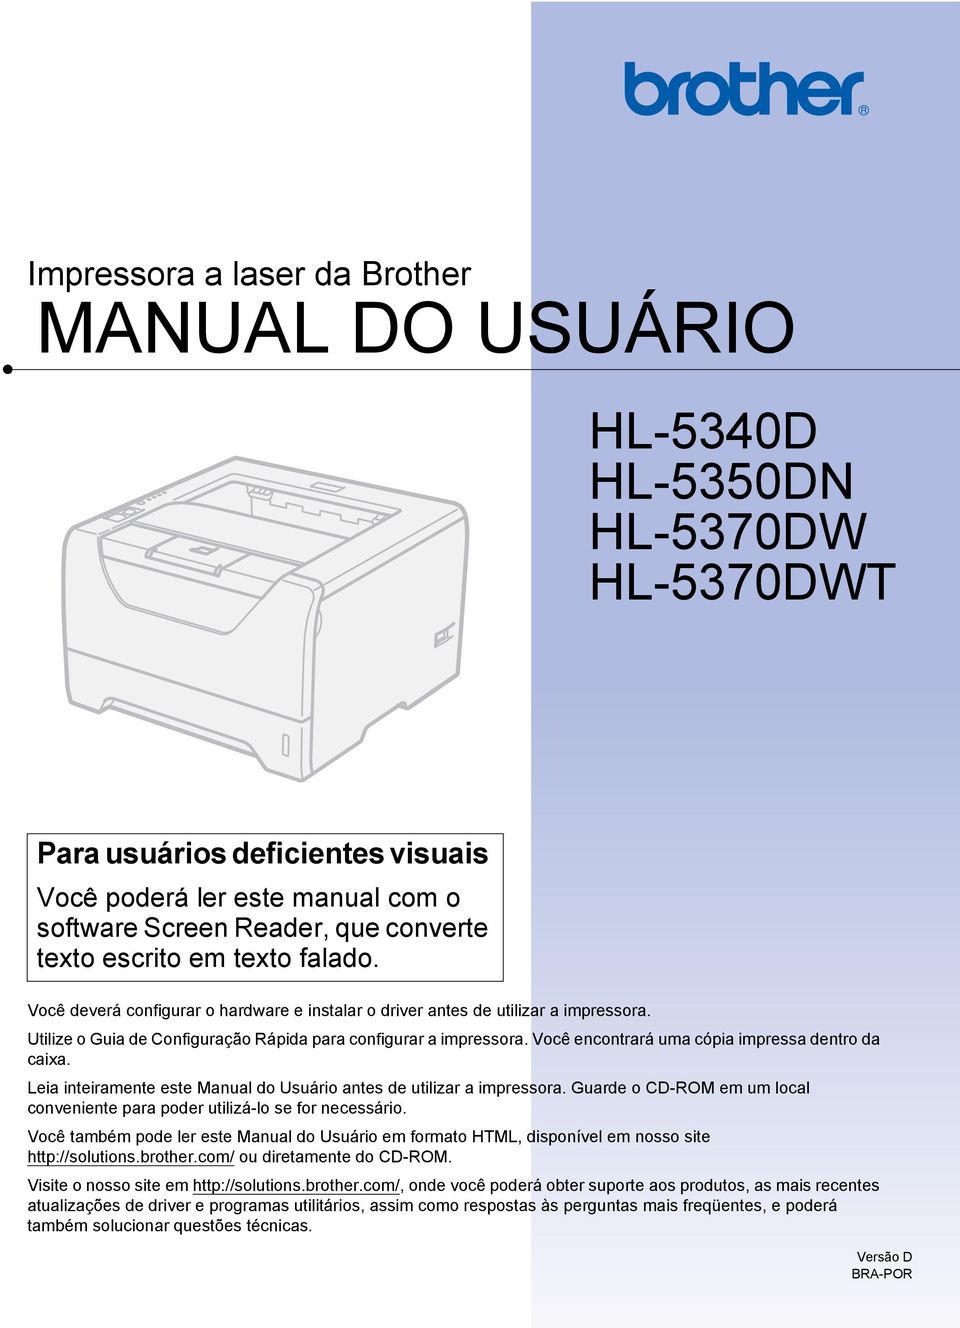 Você encontrará uma cópia impressa dentro da caixa. Leia inteiramente este Manual do Usuário antes de utilizar a impressora.